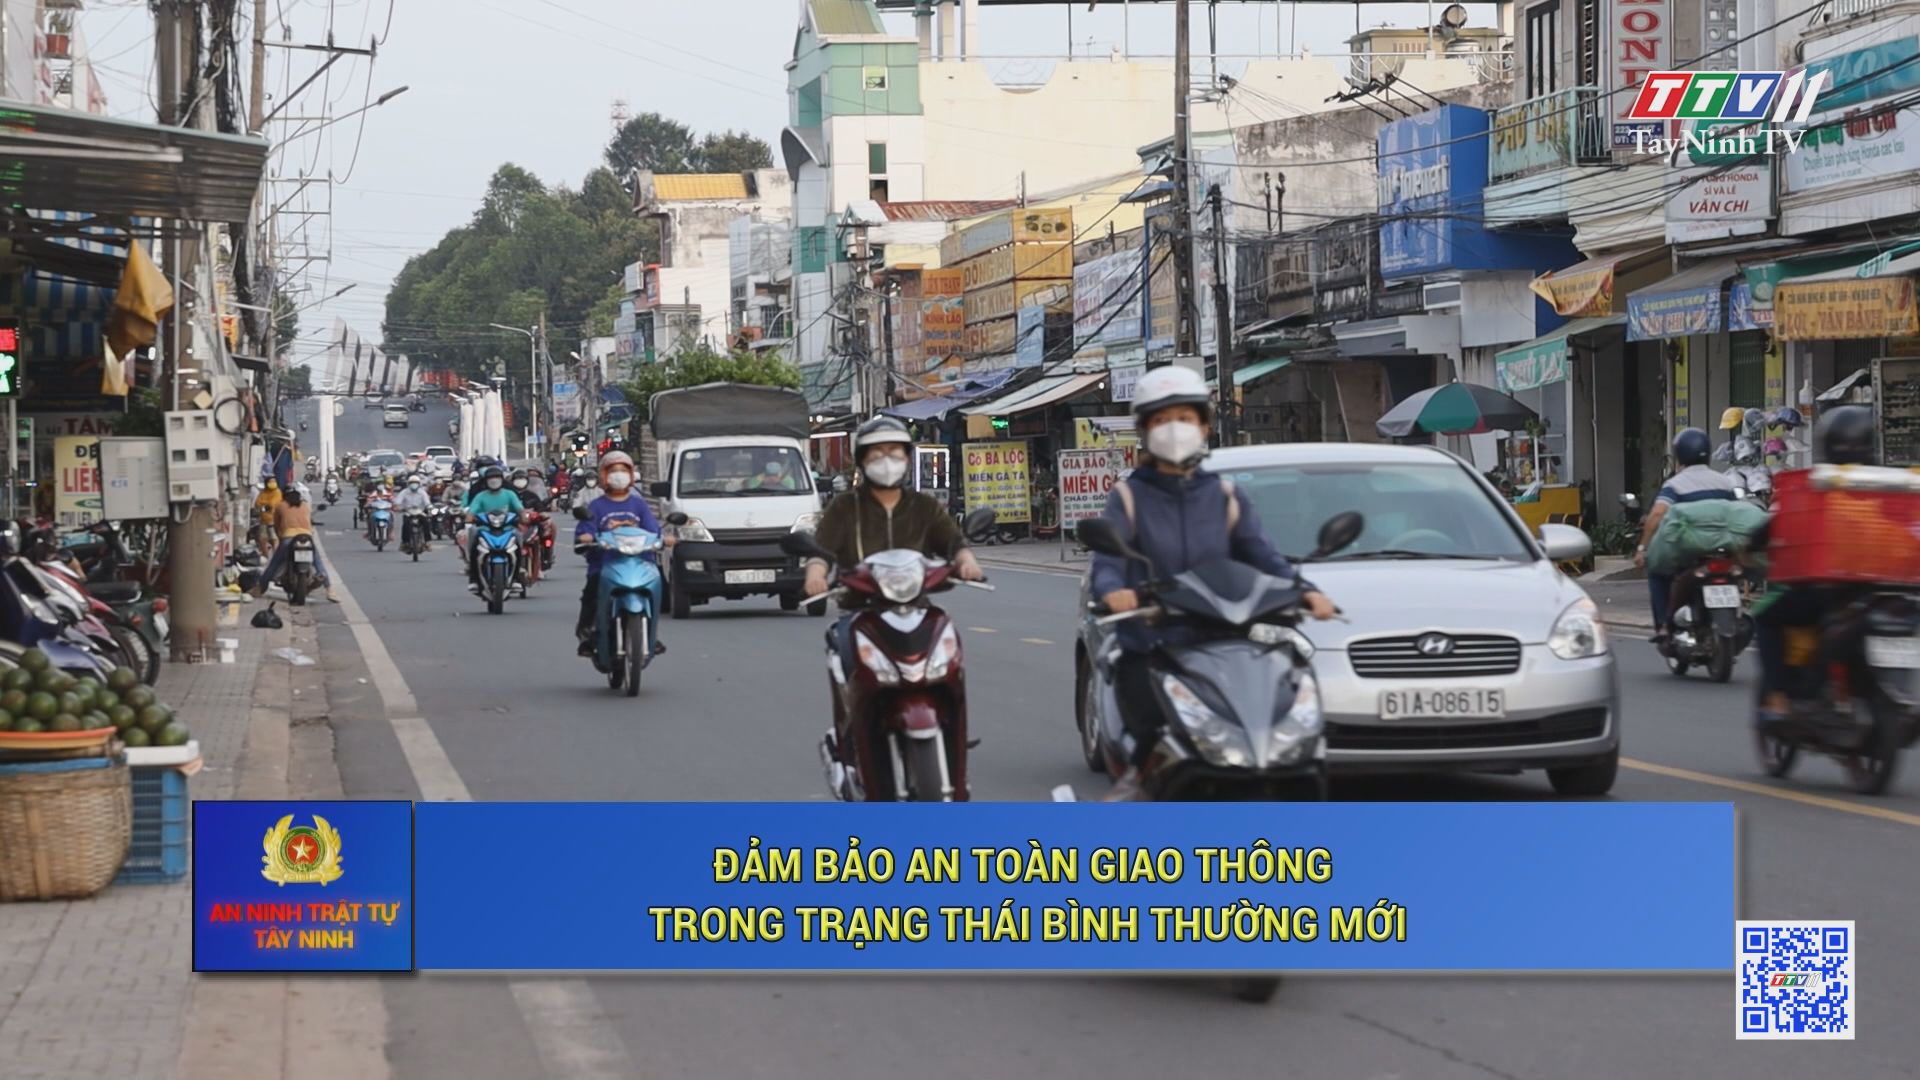 Đảm bảo an toàn giao thông trong trạng thái bình thường mới | AN NINH TRẬT TỰ | TayNinhTV